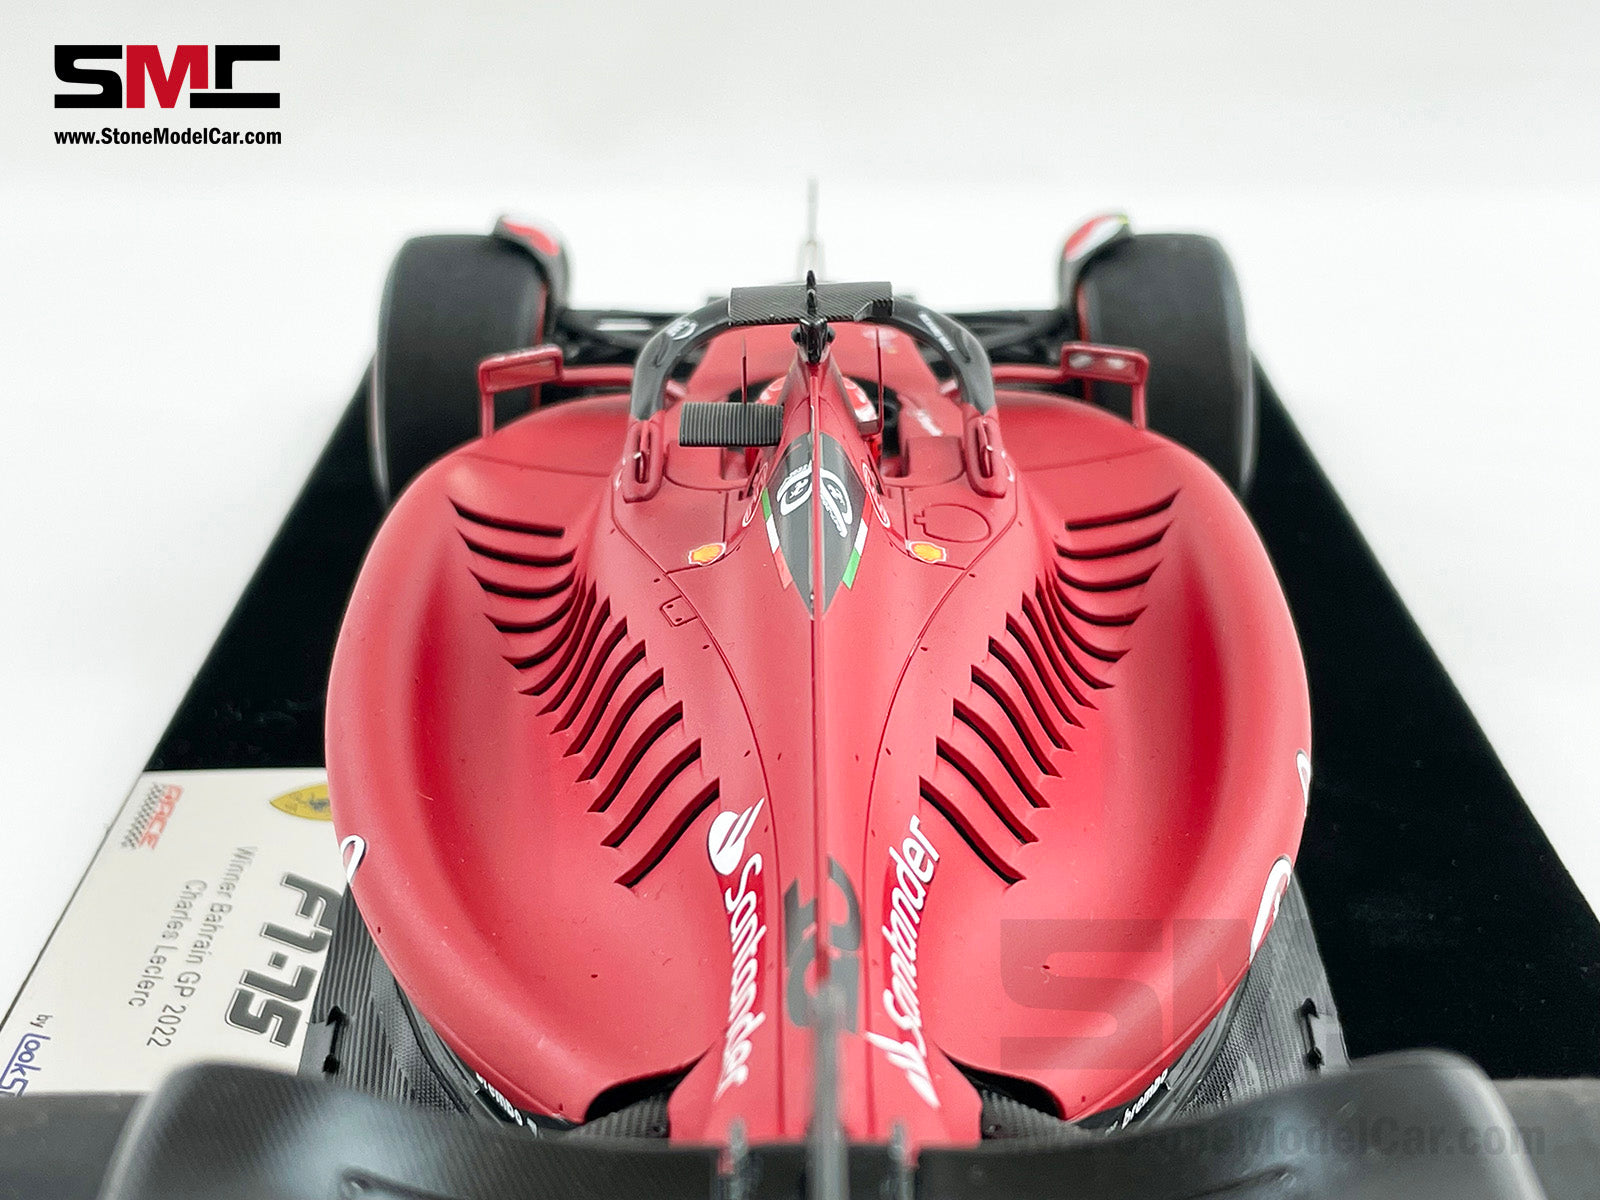 2022 F1 Ferrari F1-75 #16 Charles Leclerc Bahrain Winner 1st Win Looksmart  1:18